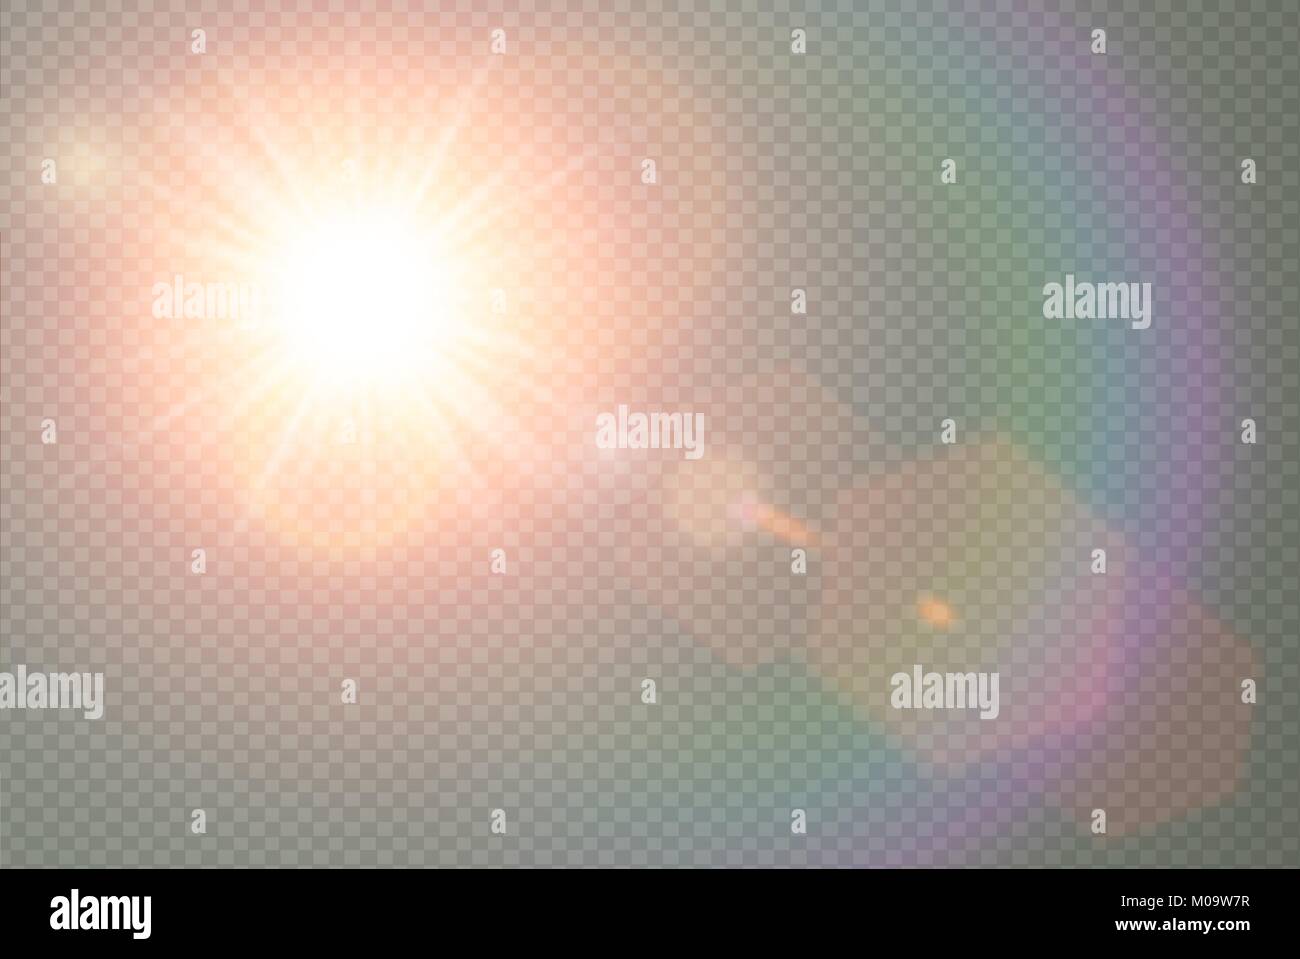 Vettore di luce solare trasparente speciale lente flare effetto di luce. Sun flash con caldi raggi e spotlight. Abstract traslucido elemento di arredamento di design. Isolat Illustrazione Vettoriale